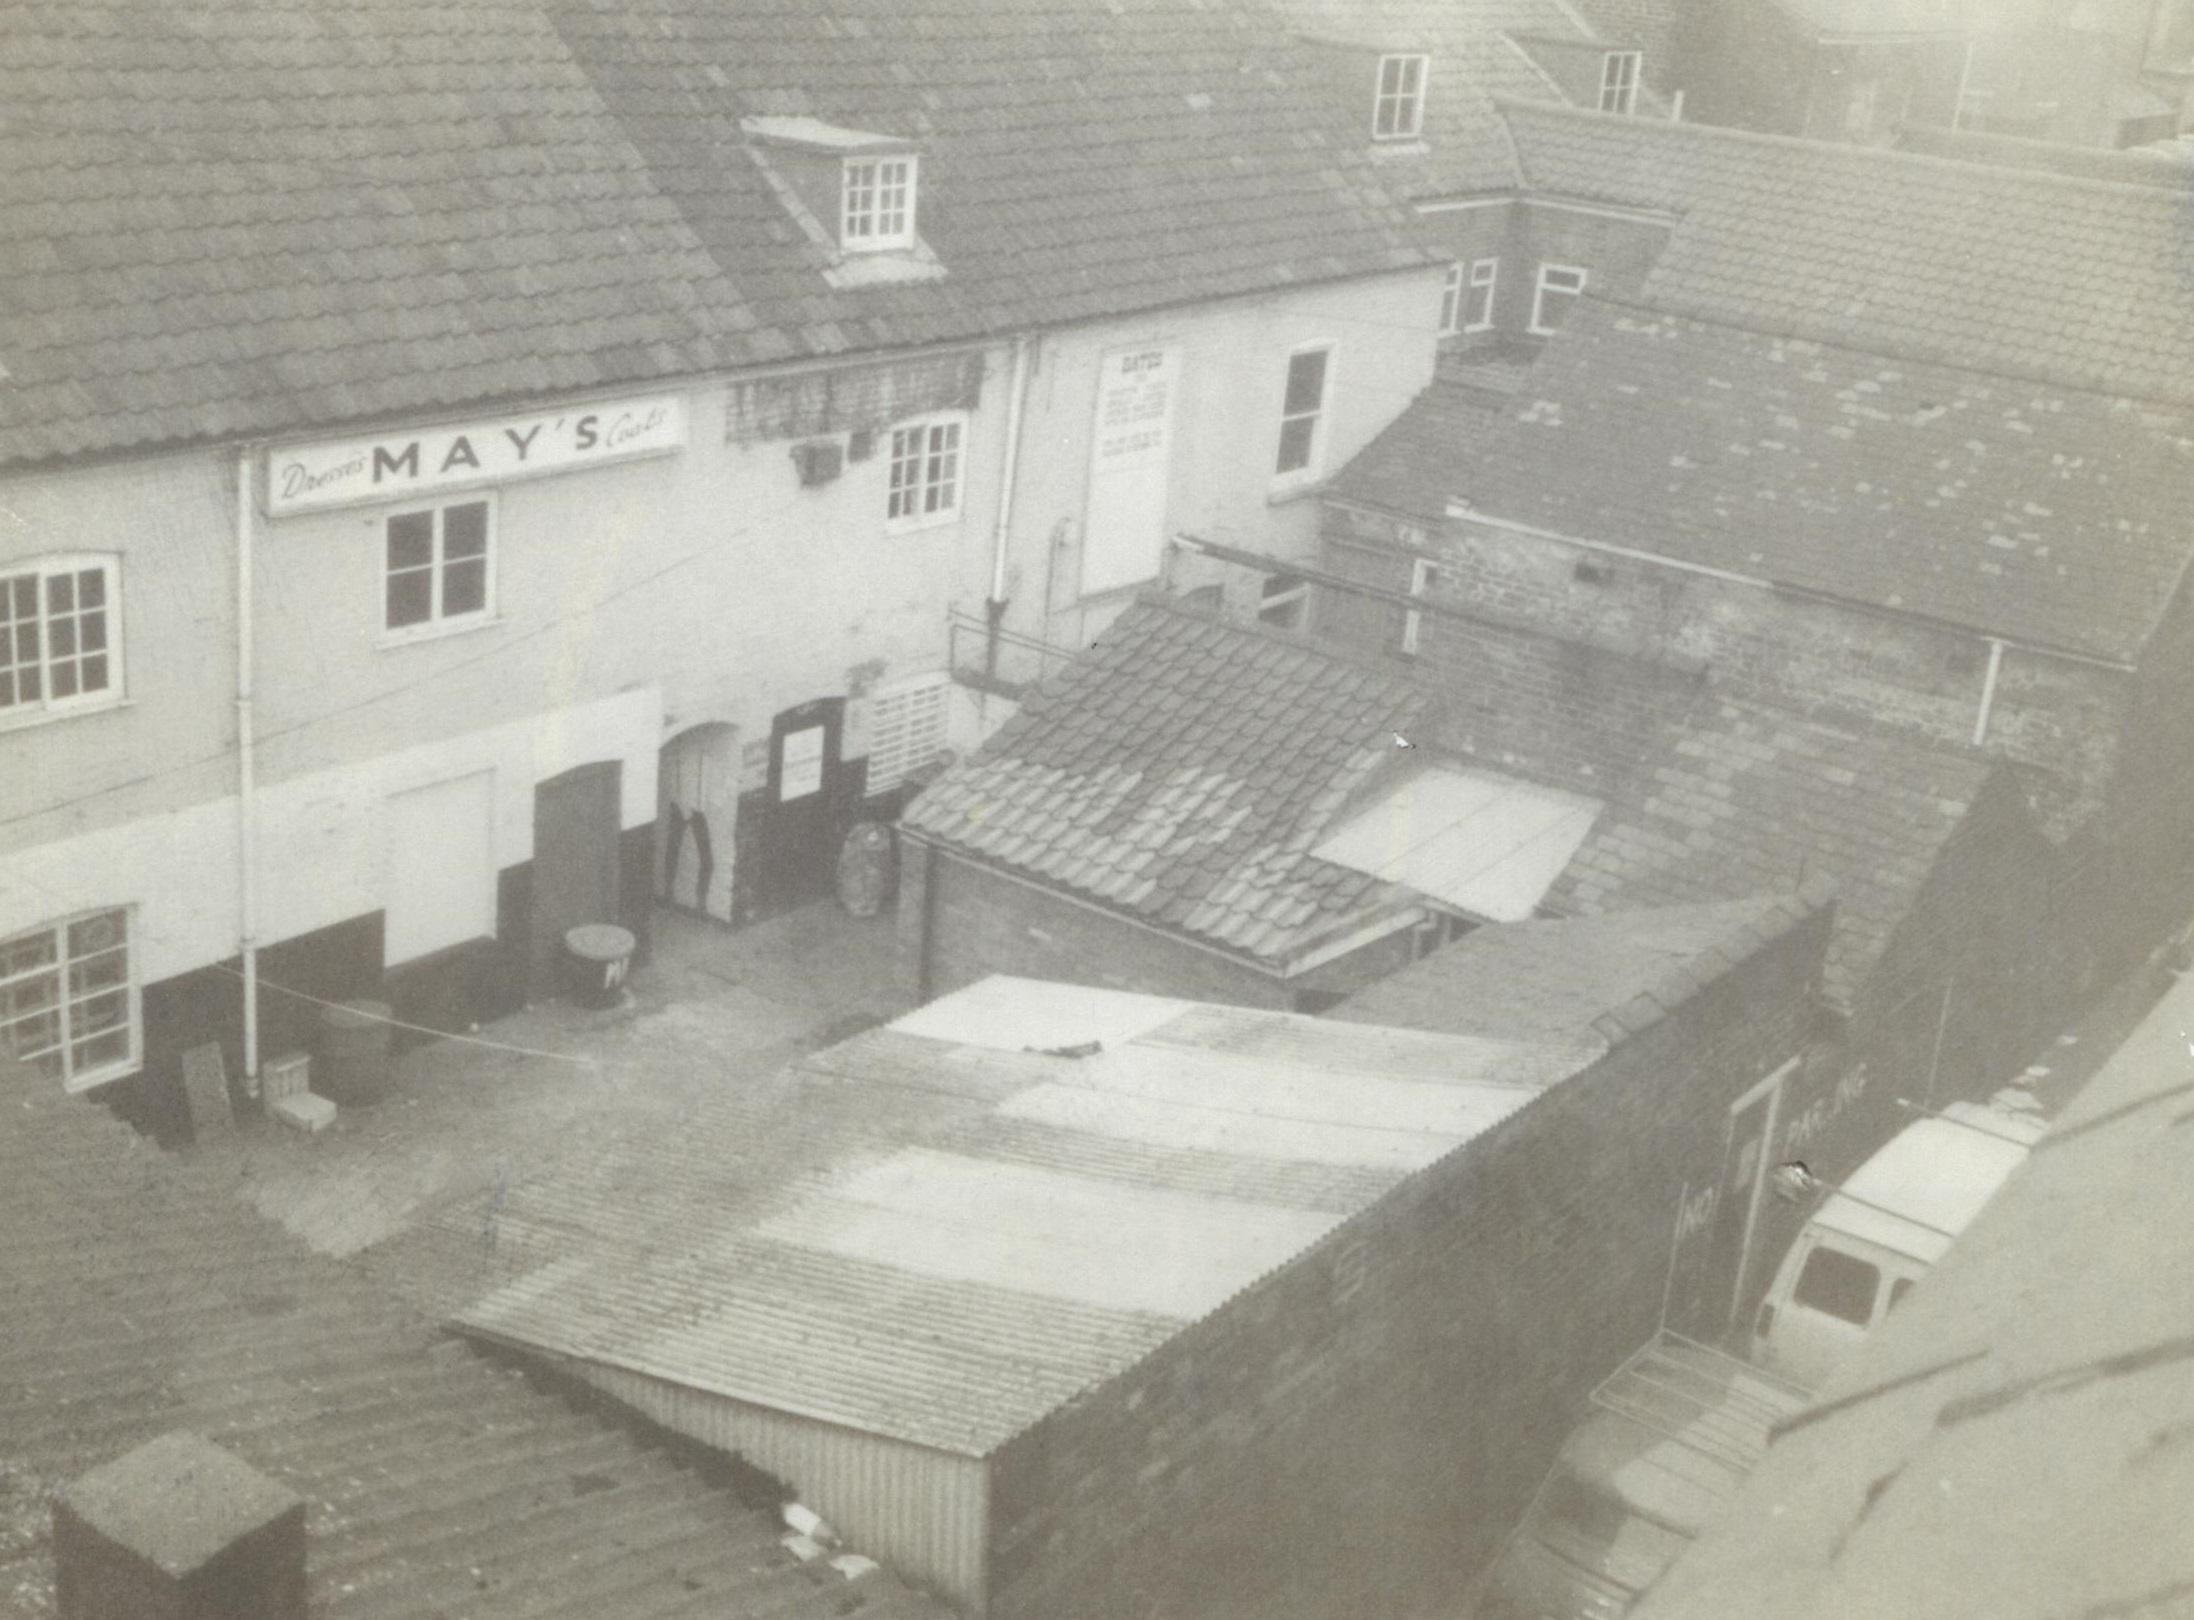 Ariel view of Sincil Street in 1970s